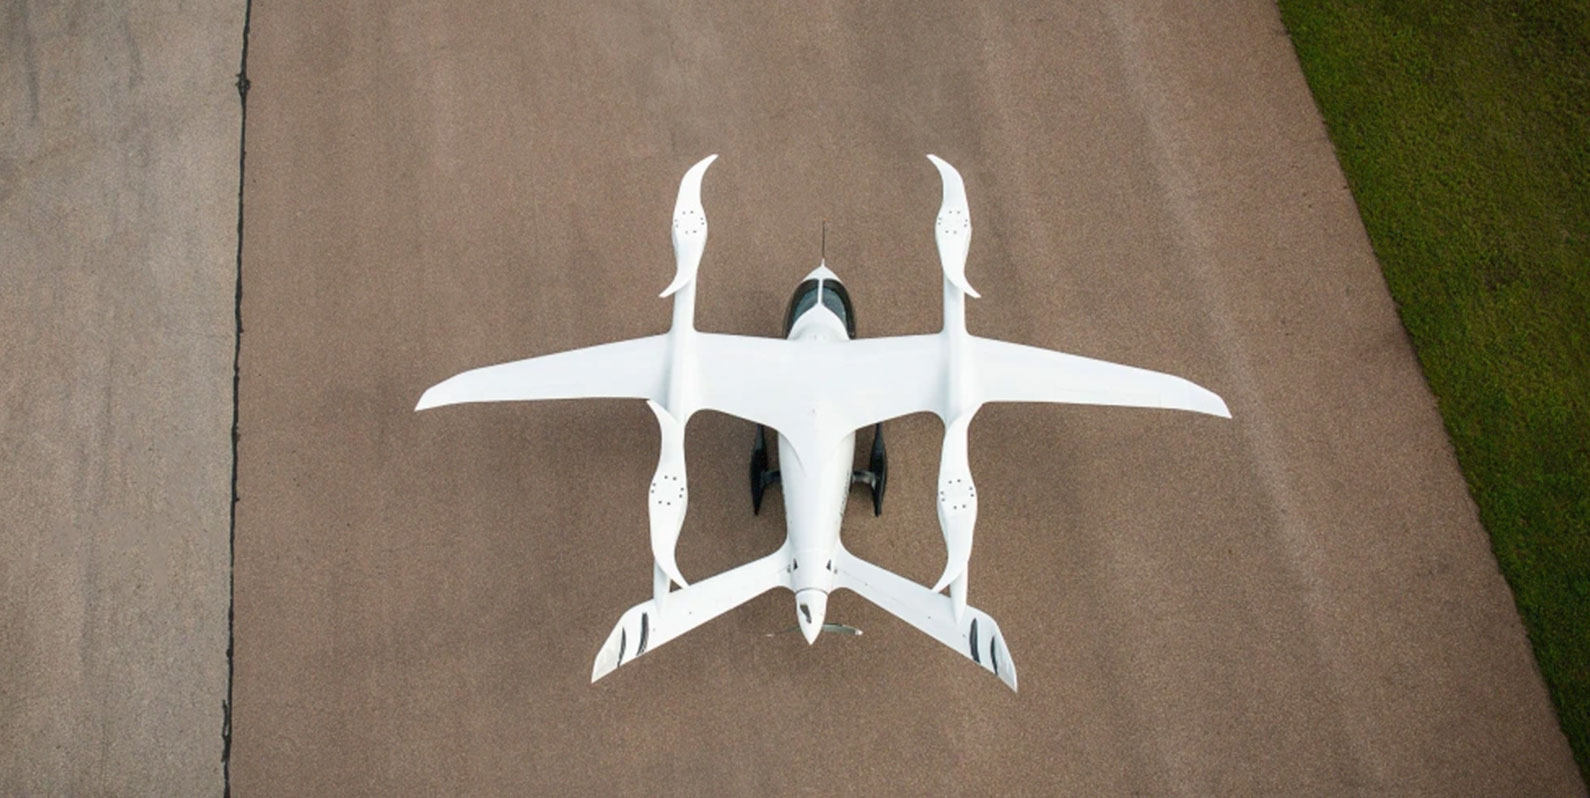 Ainda há um longo caminho para o desenvolvimento de aviões elétricos futuristas